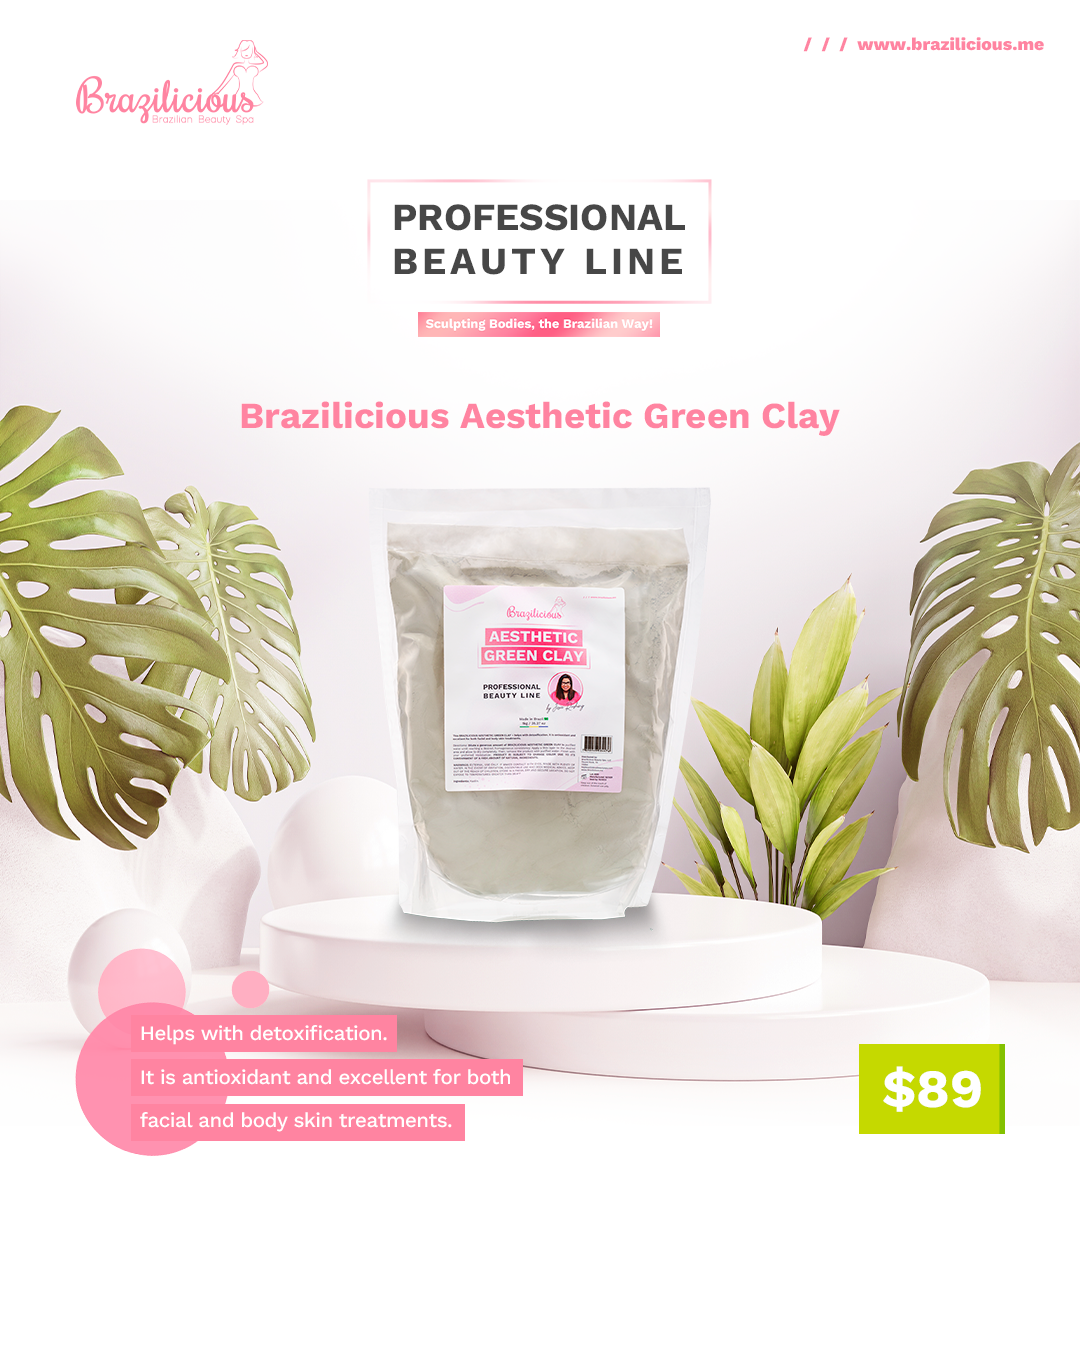 Brazilicious Aesthetic Green Clay